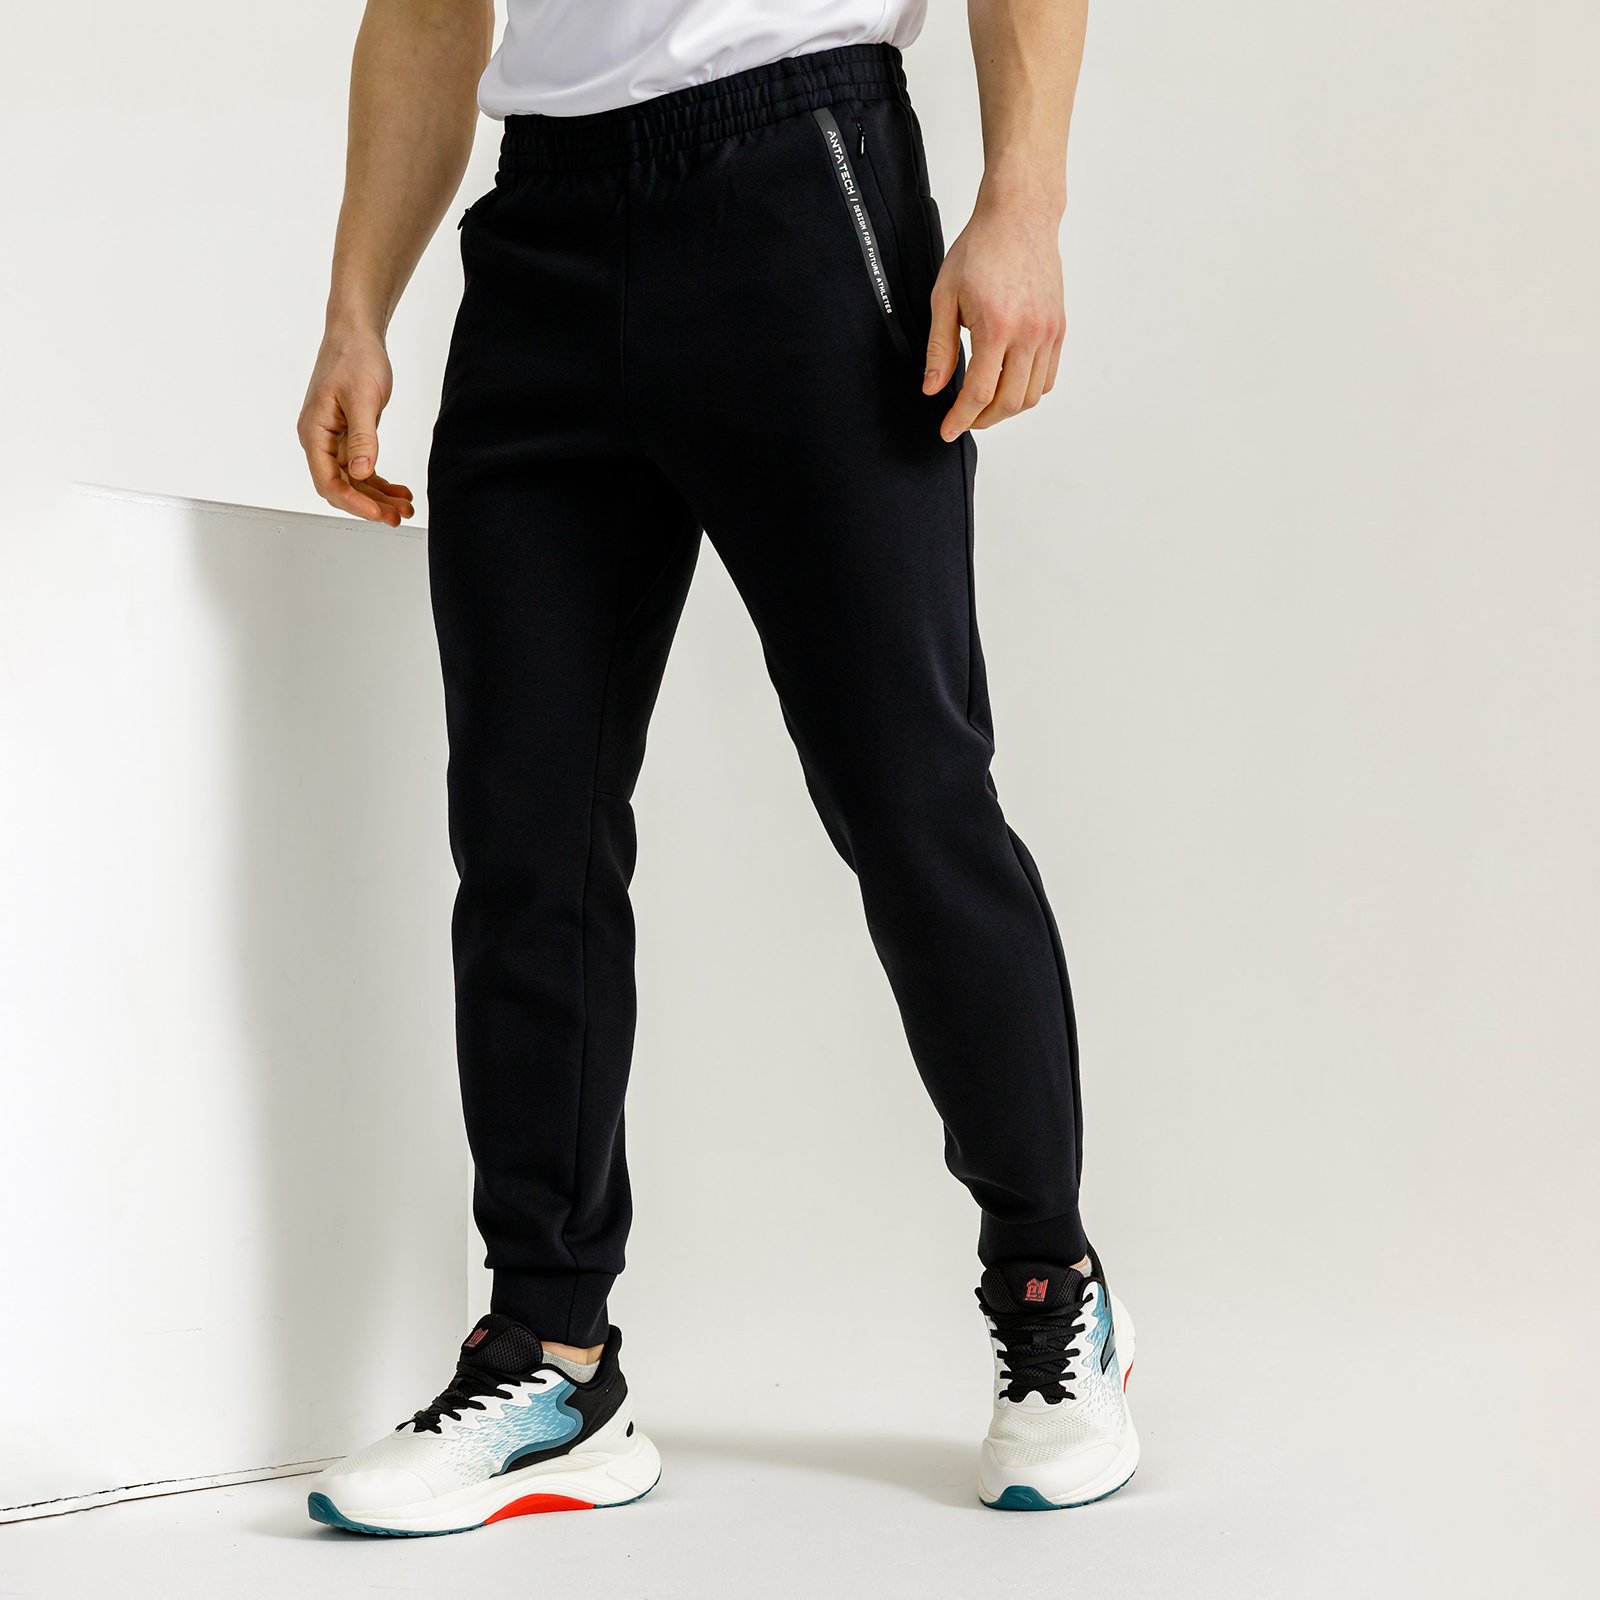 Мужские брюки и шорты – купить в официальном интернет-магазине TrendZoneМосква, Спб, Россия